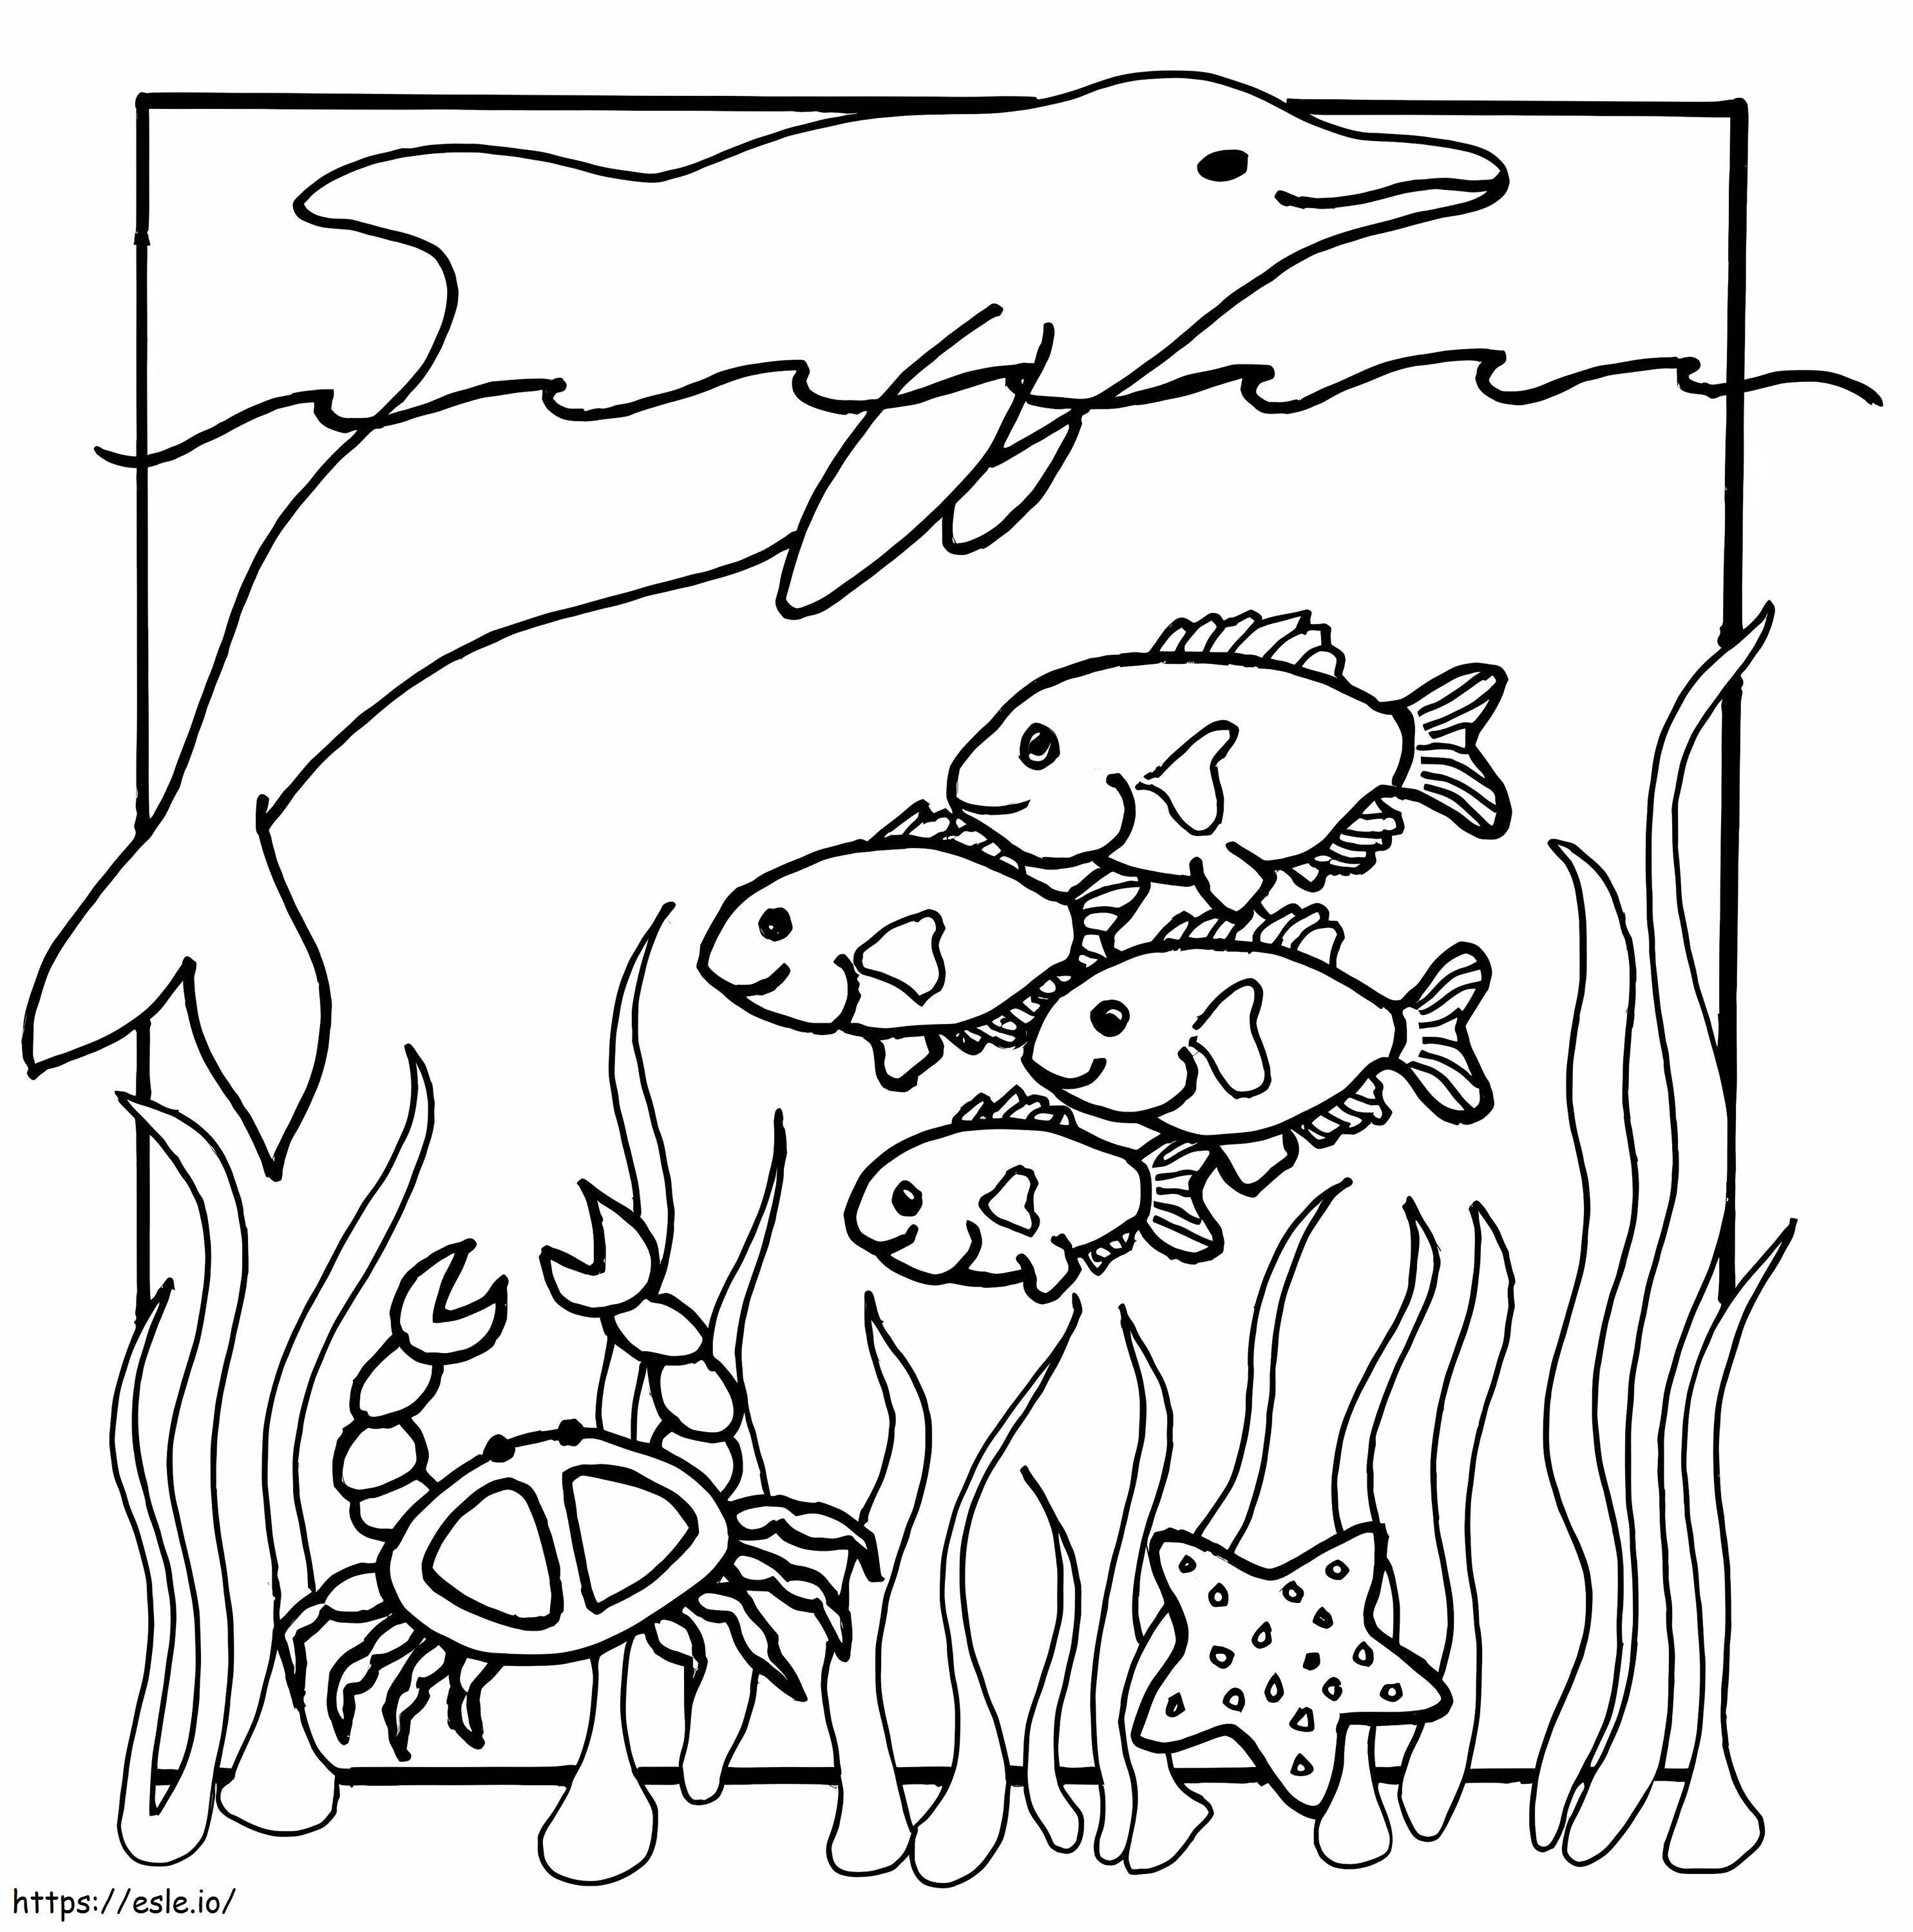 Zeichnung von Meerestieren ausmalbilder